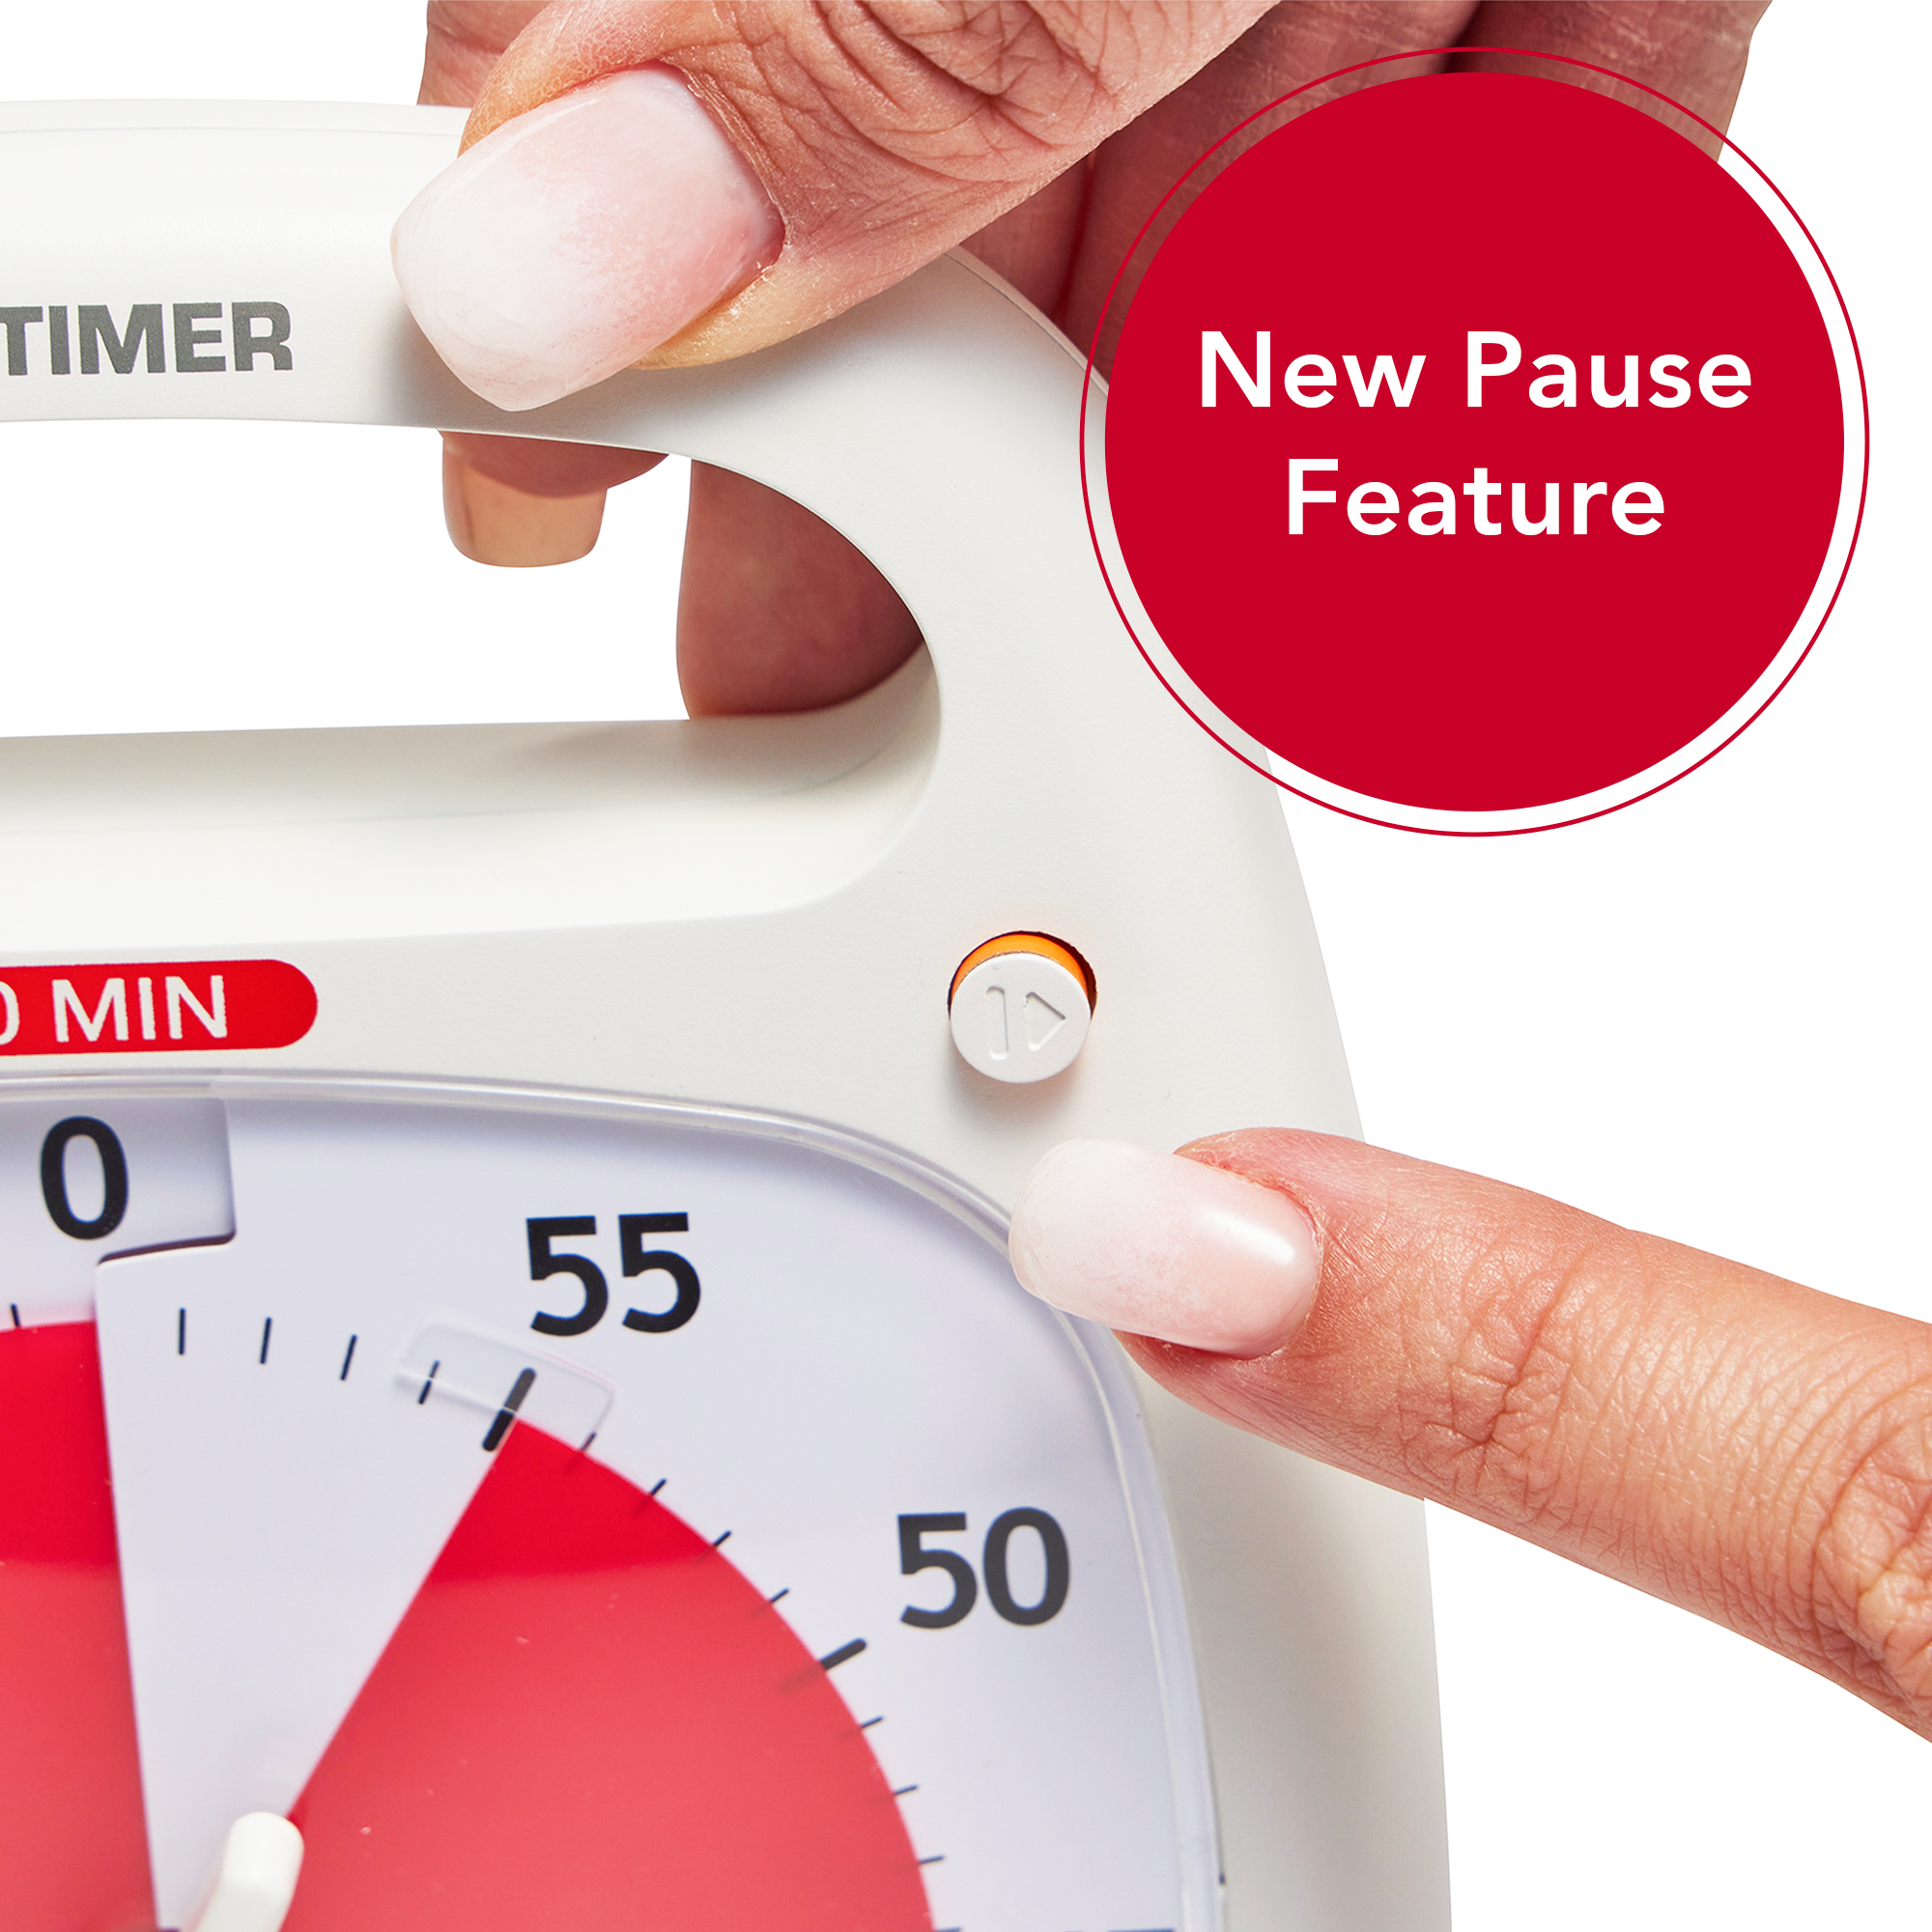 Nuevo Time Timer Plus para controlar visualmente el tiempo